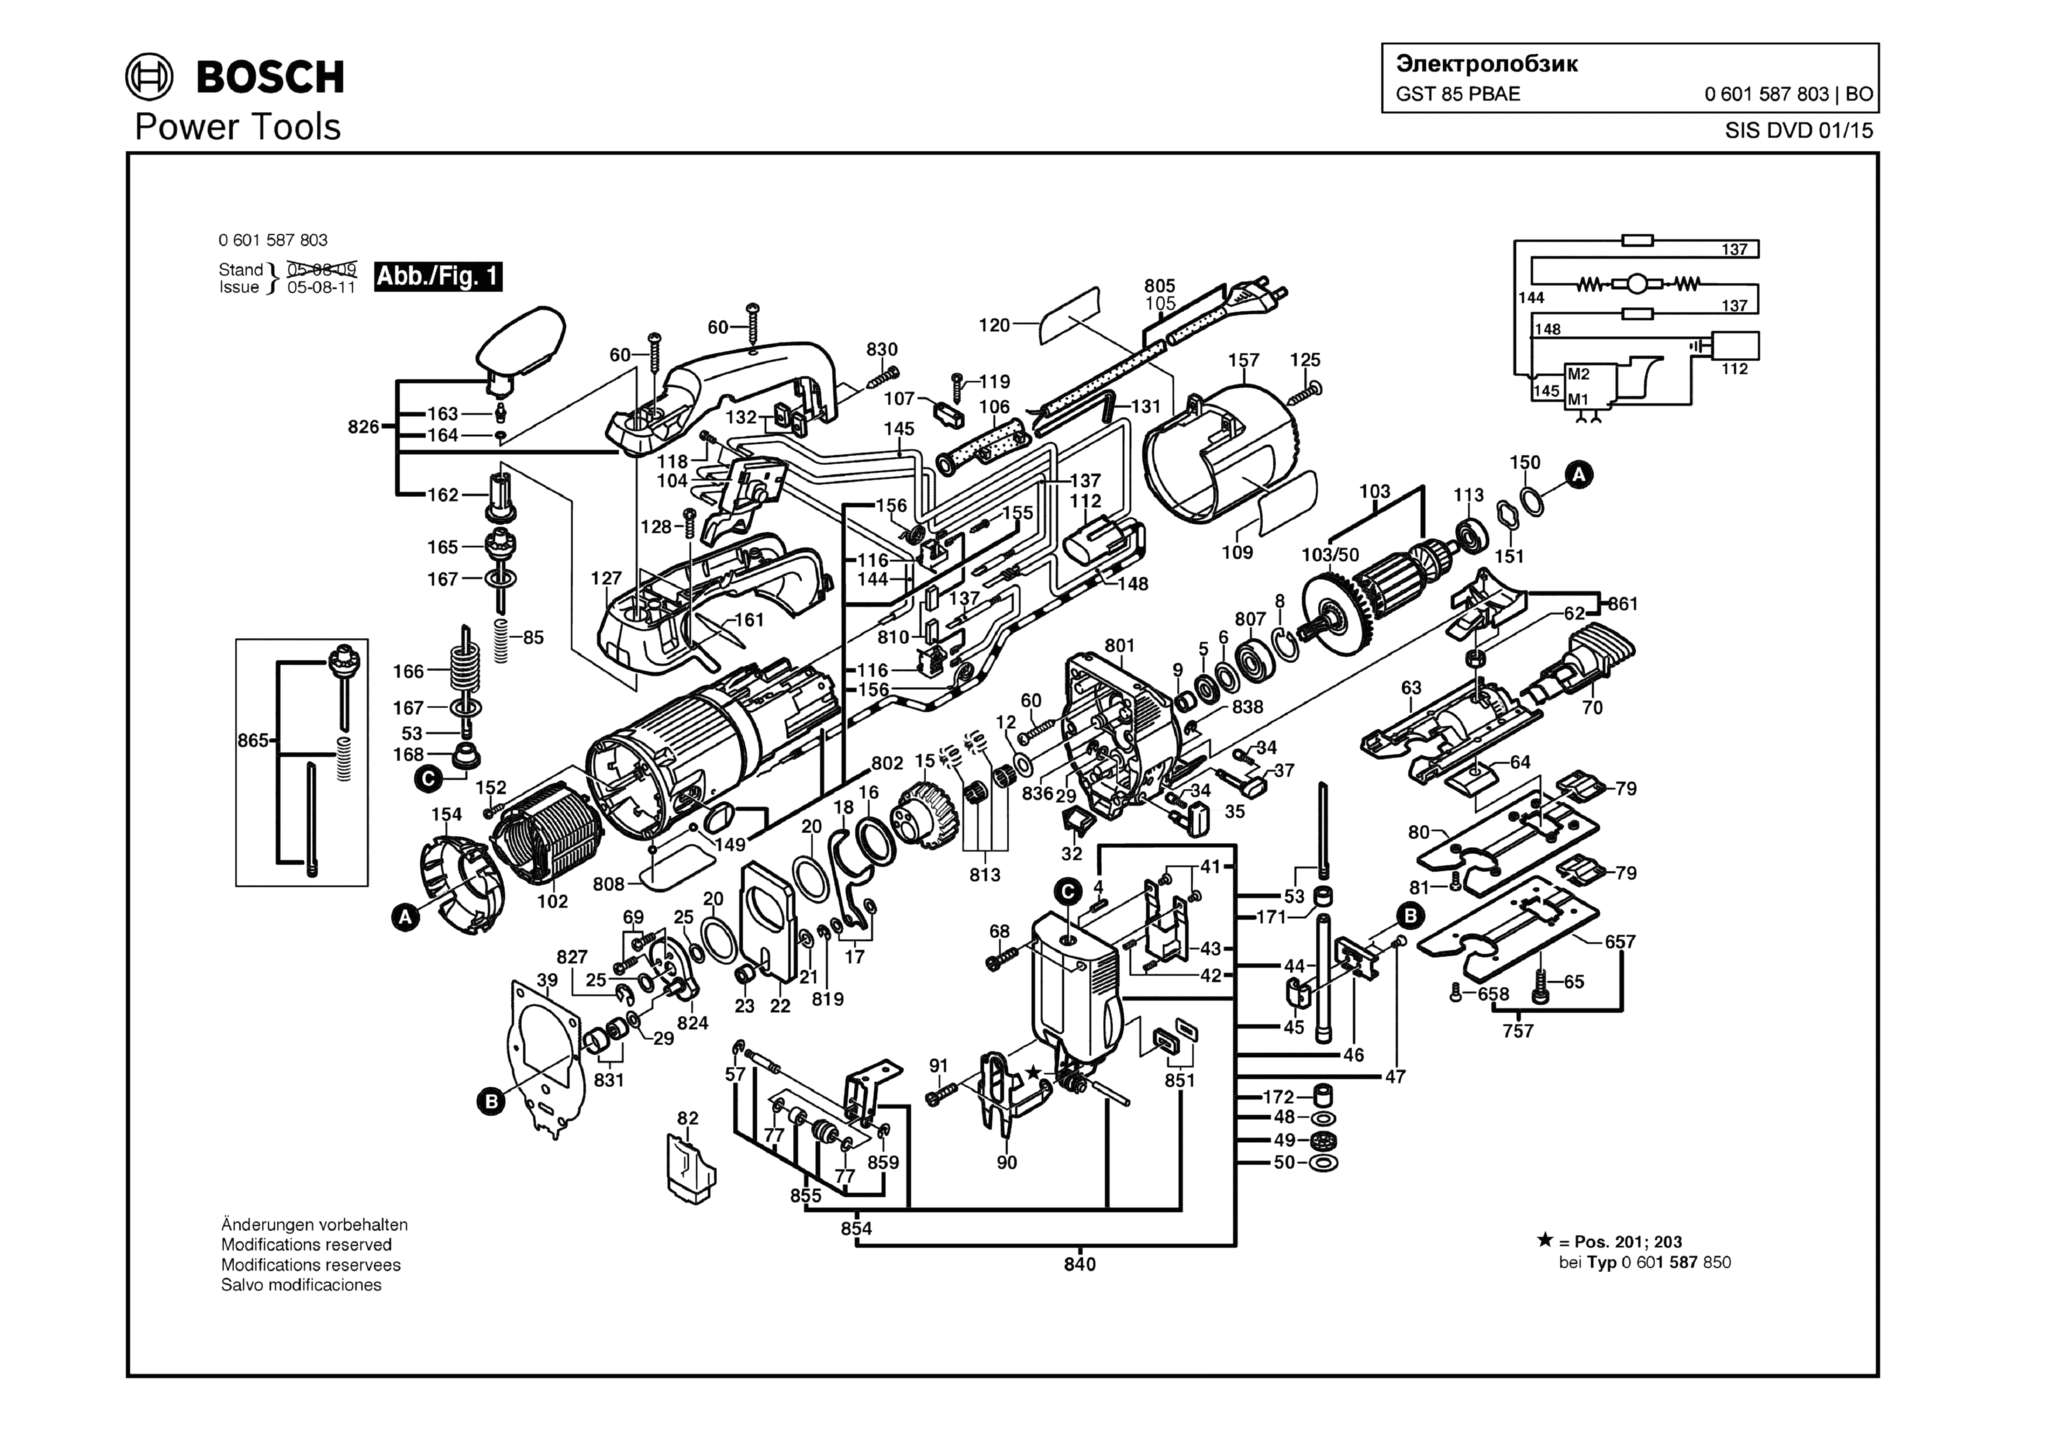 Запчасти, схема и деталировка Bosch GST 85 PBAE (ТИП 0601587803)